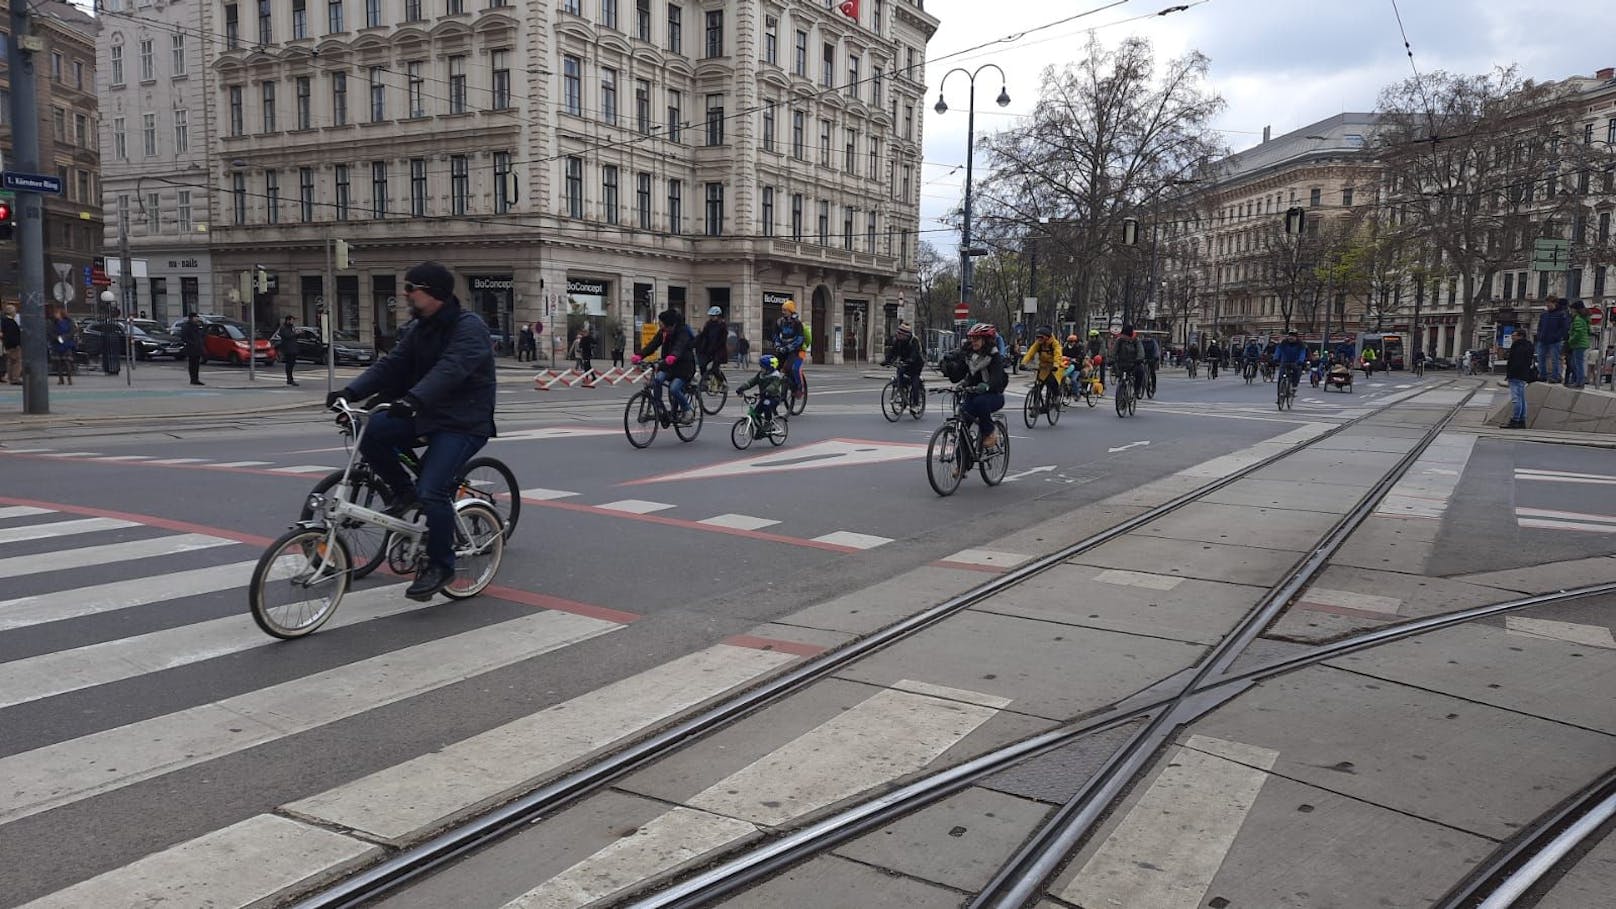 Tausende klimafreundliche Radfahrer ließen für eine Parade die Ringstraße sperren.